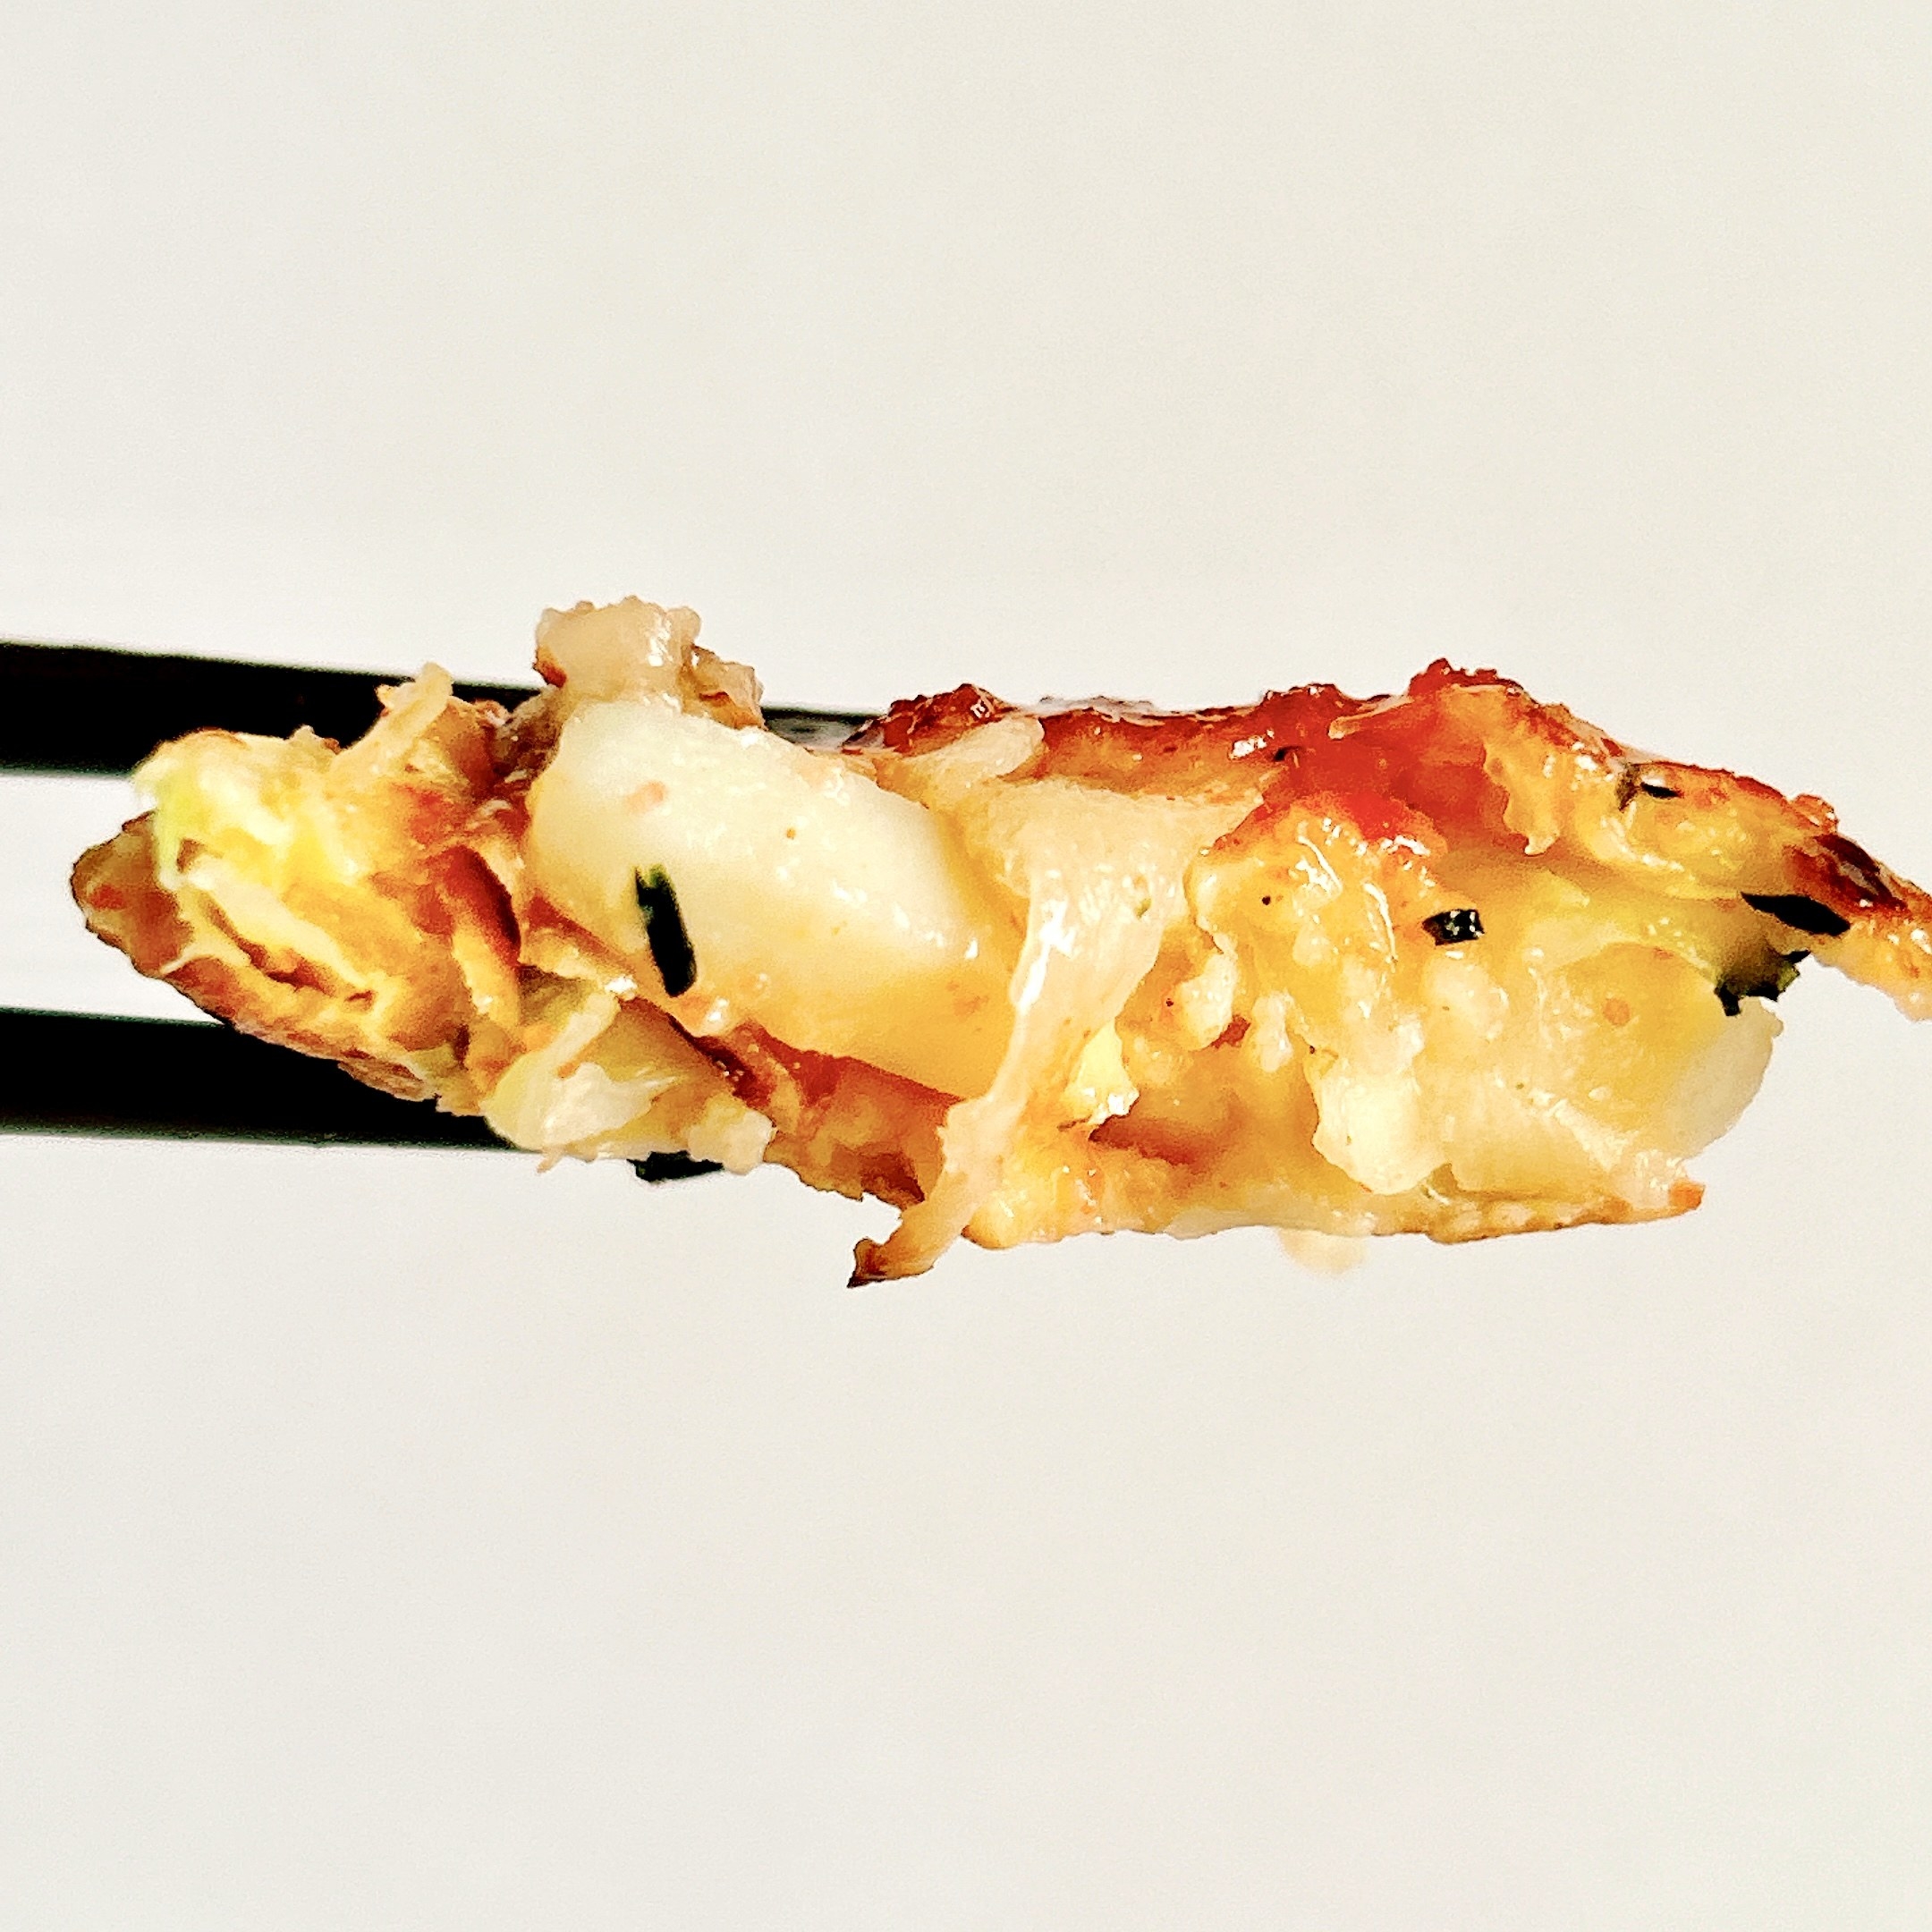 セブン‐イレブンのオススメの冷凍食品「7プレミアム 明太もちお好み焼」